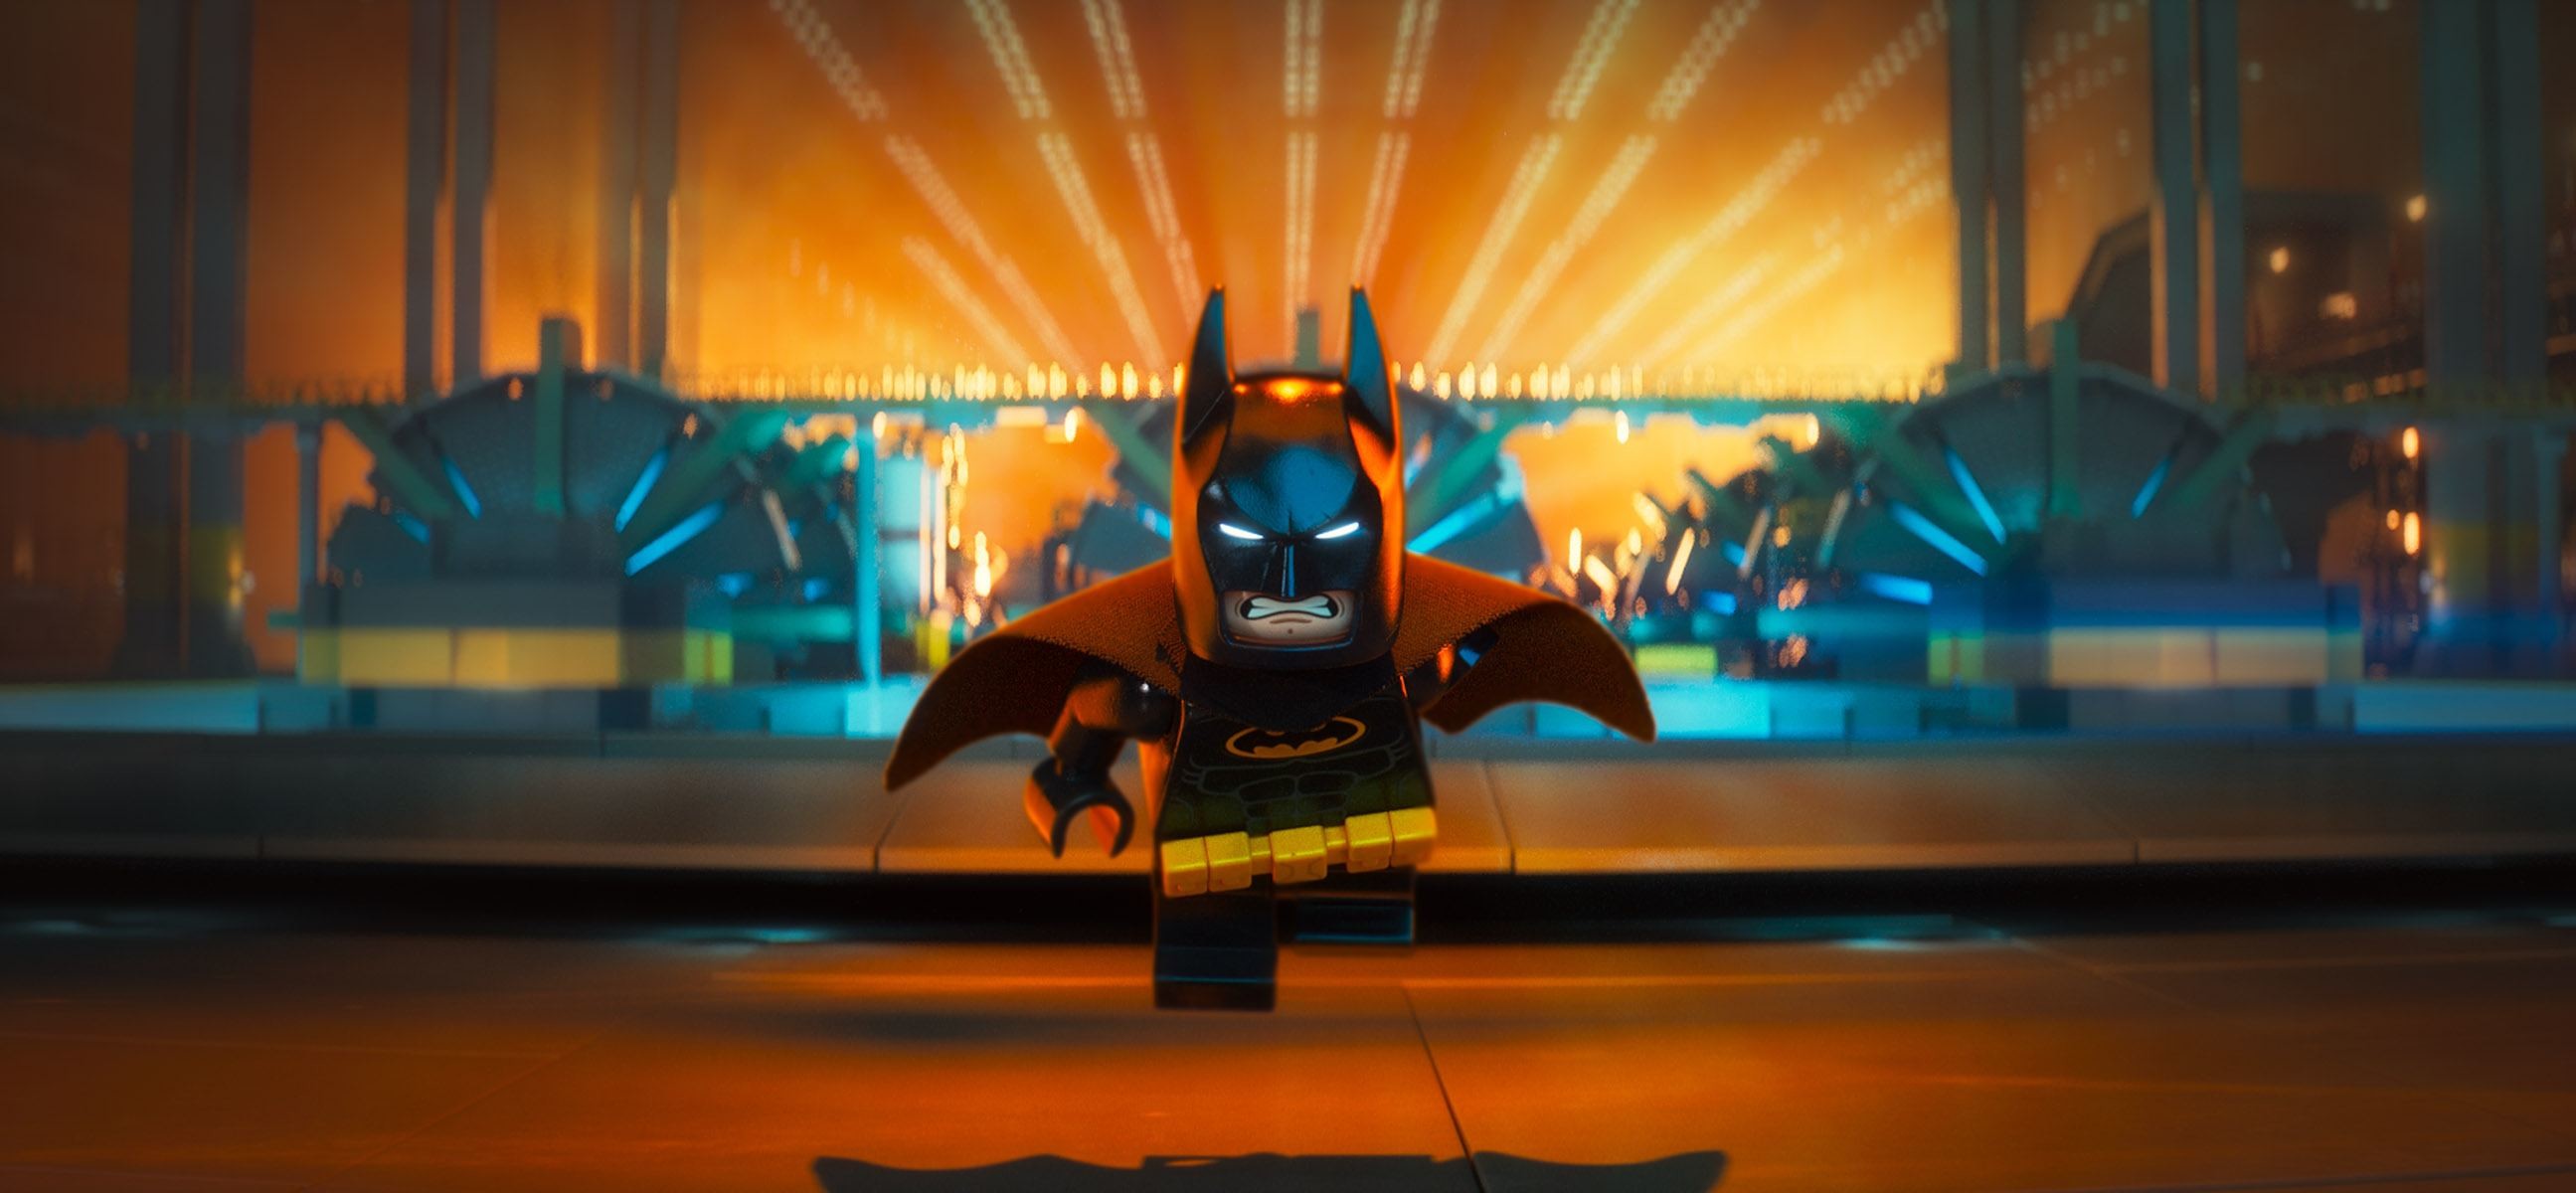 Lego Batman Wallpaper (81+ images)